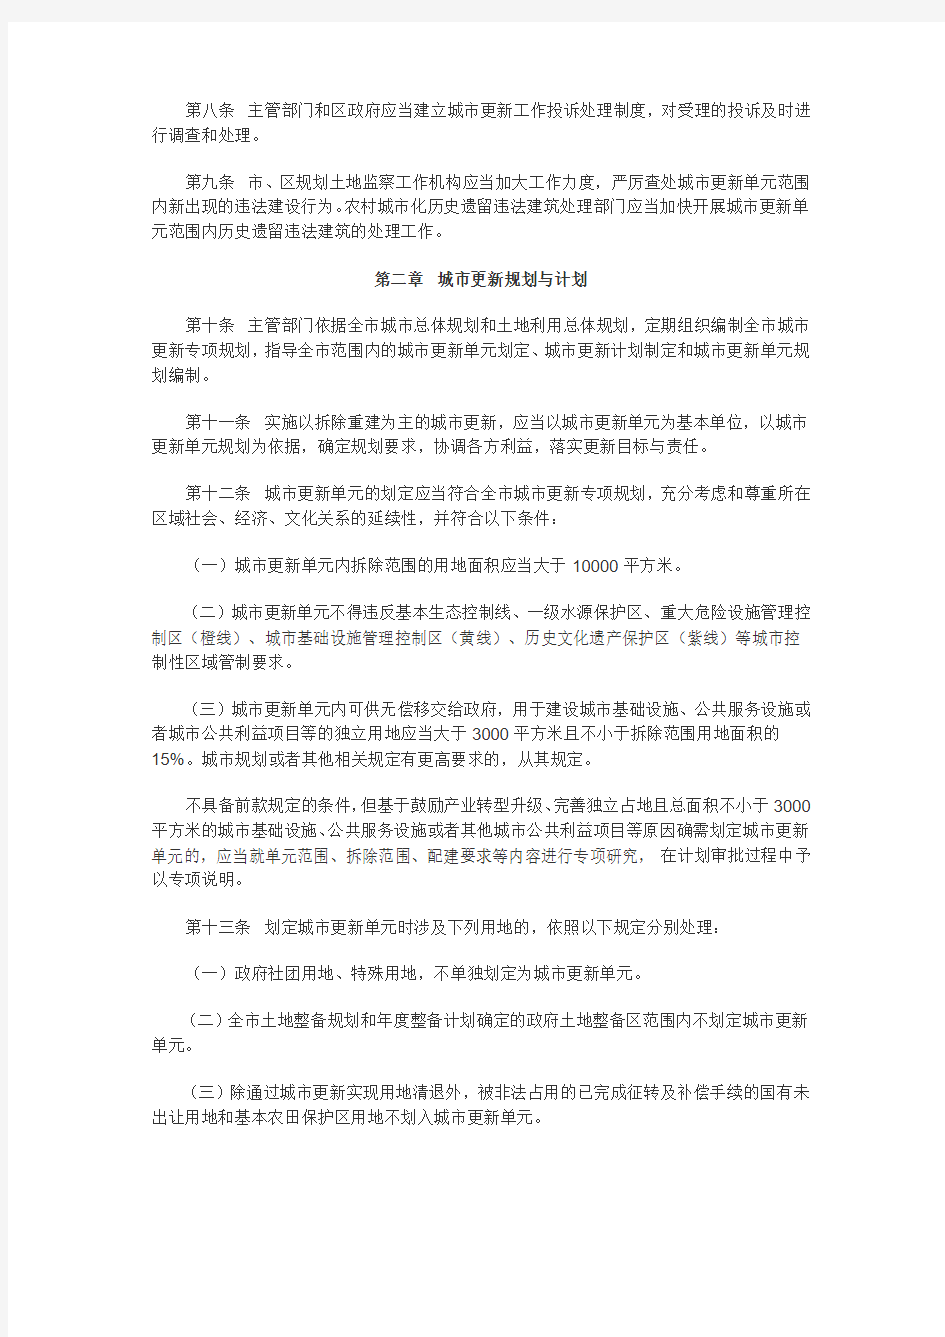 深圳市城市更新办法实施细则(深府〔2012〕1号)